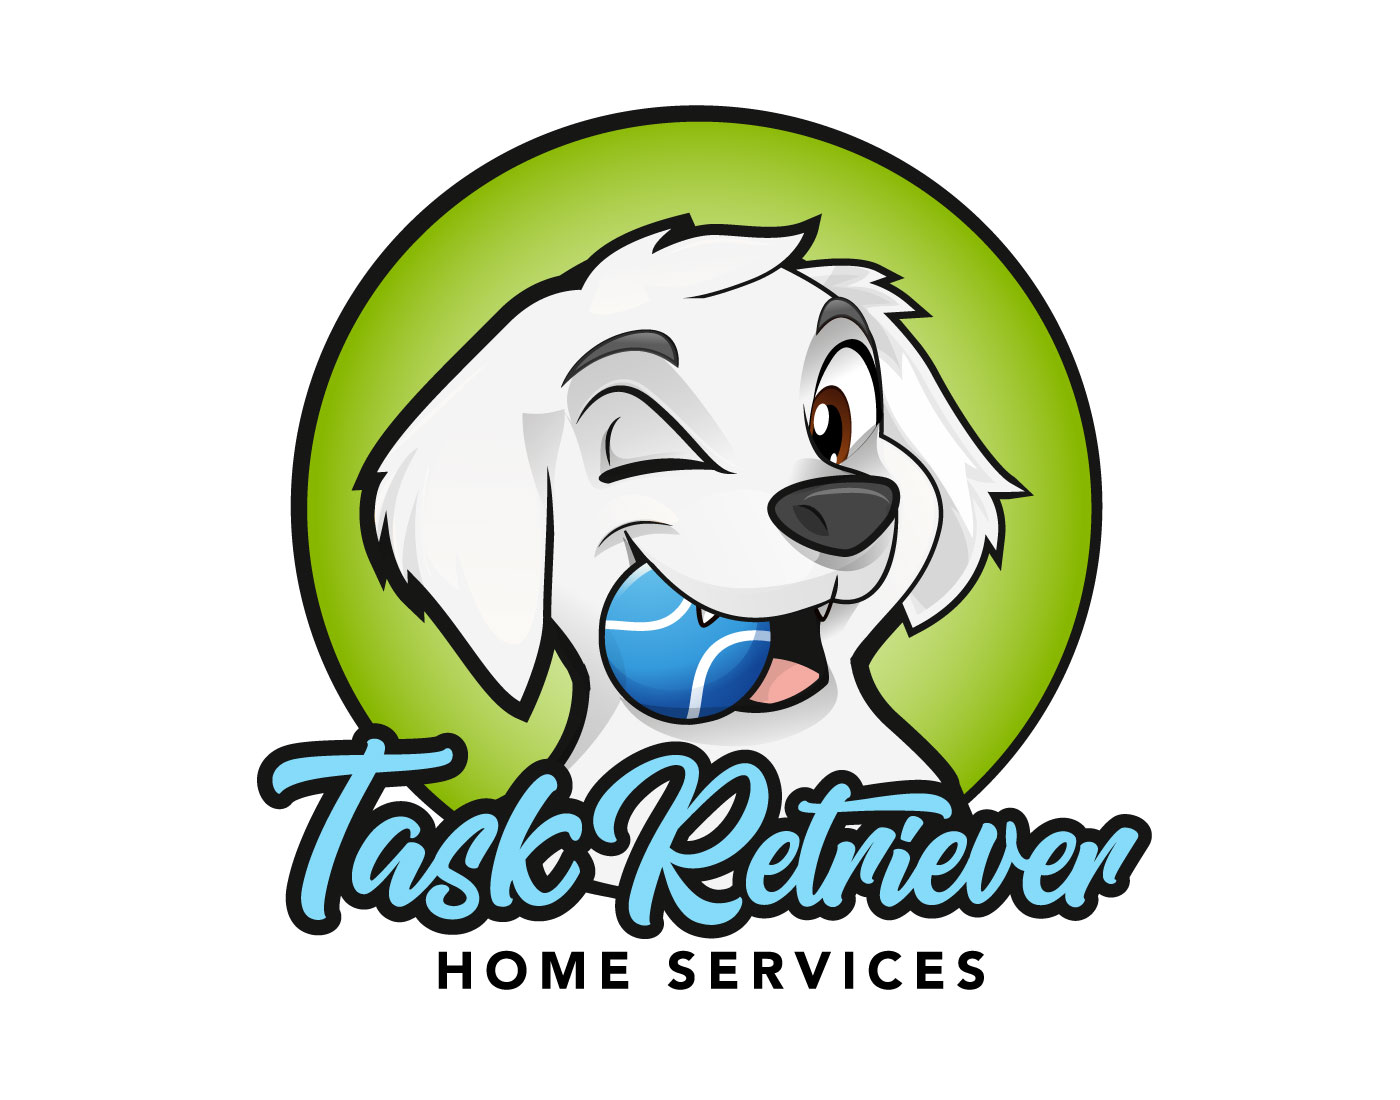 Task Retriever logo